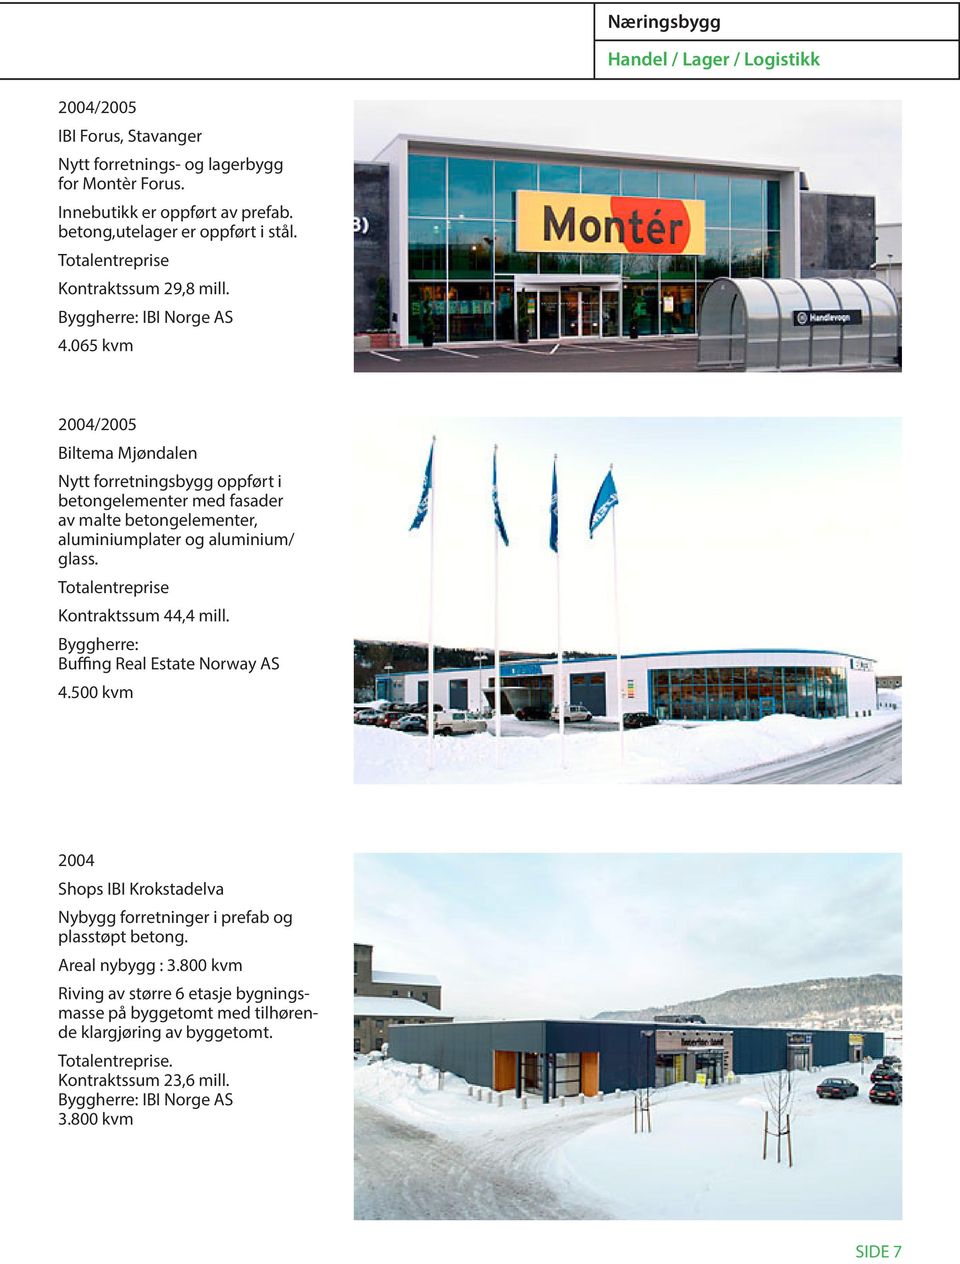 065 kvm 2004/2005 Biltema Mjøndalen Nytt forretningsbygg oppført i betongelementer med fasader av malte betongelementer, aluminiumplater og aluminium/ glass. Kontraktssum 44,4 mill.